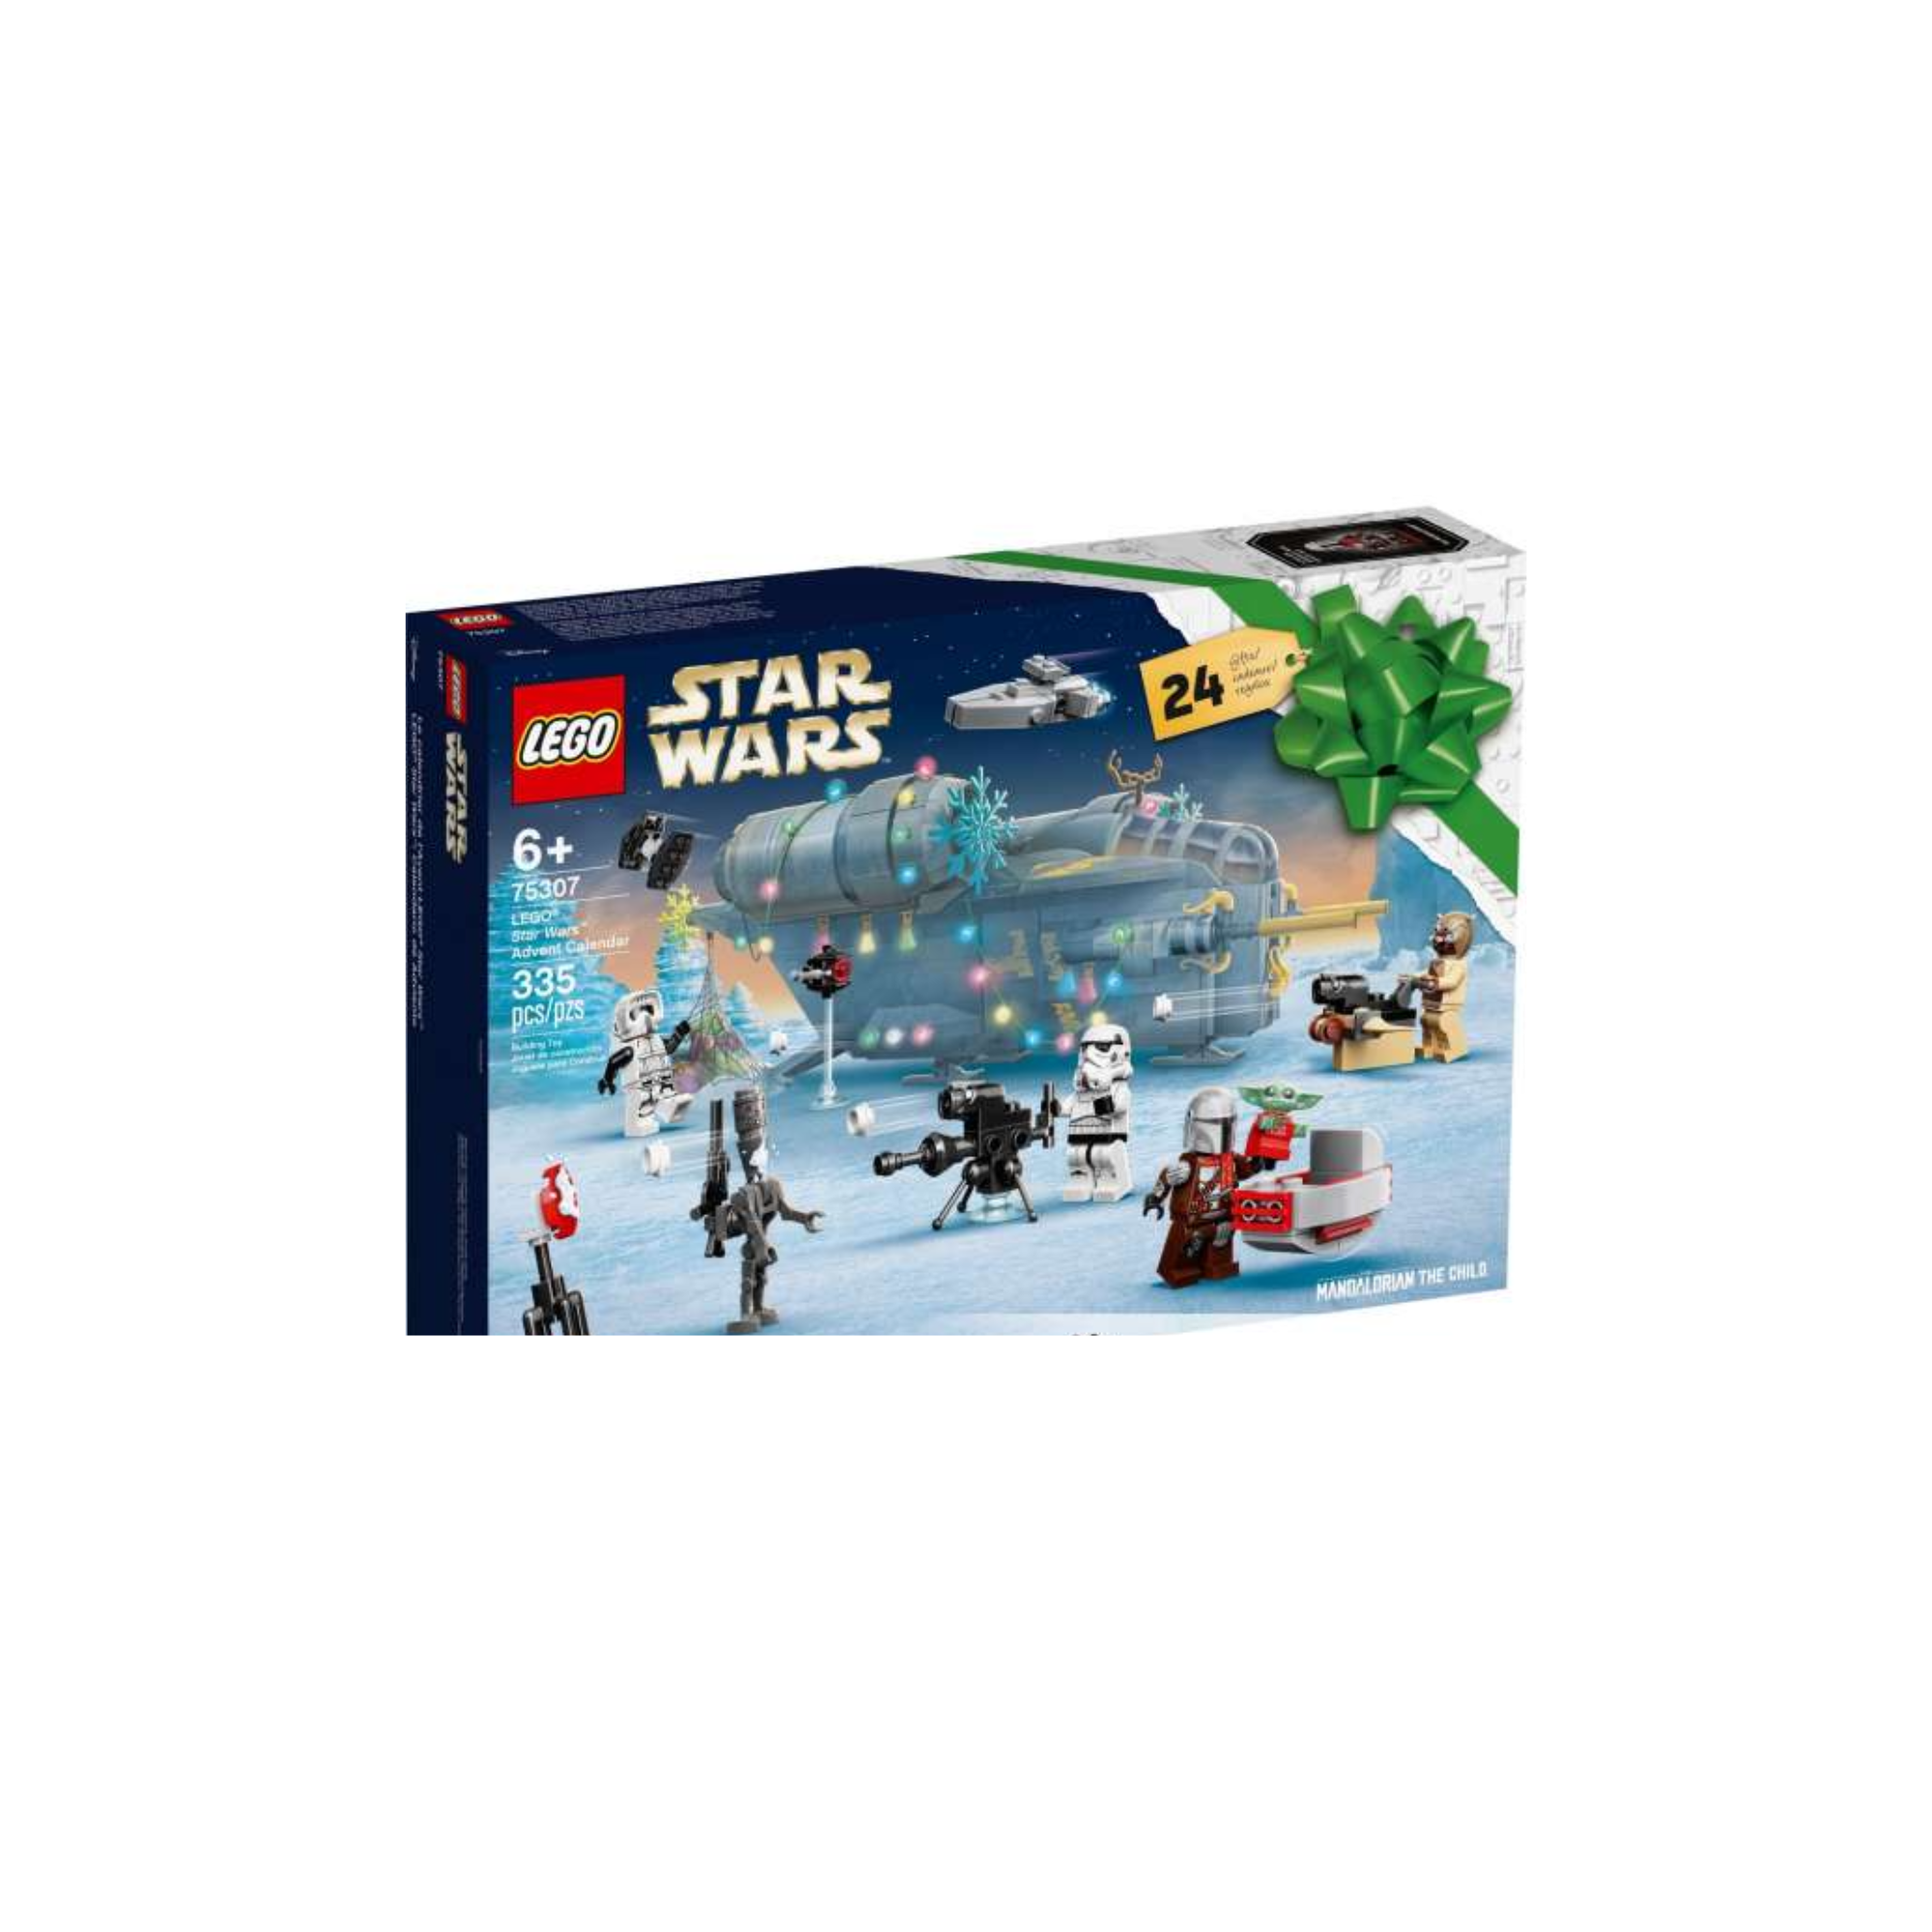 Star Wars Lego Advent Calendar 2021